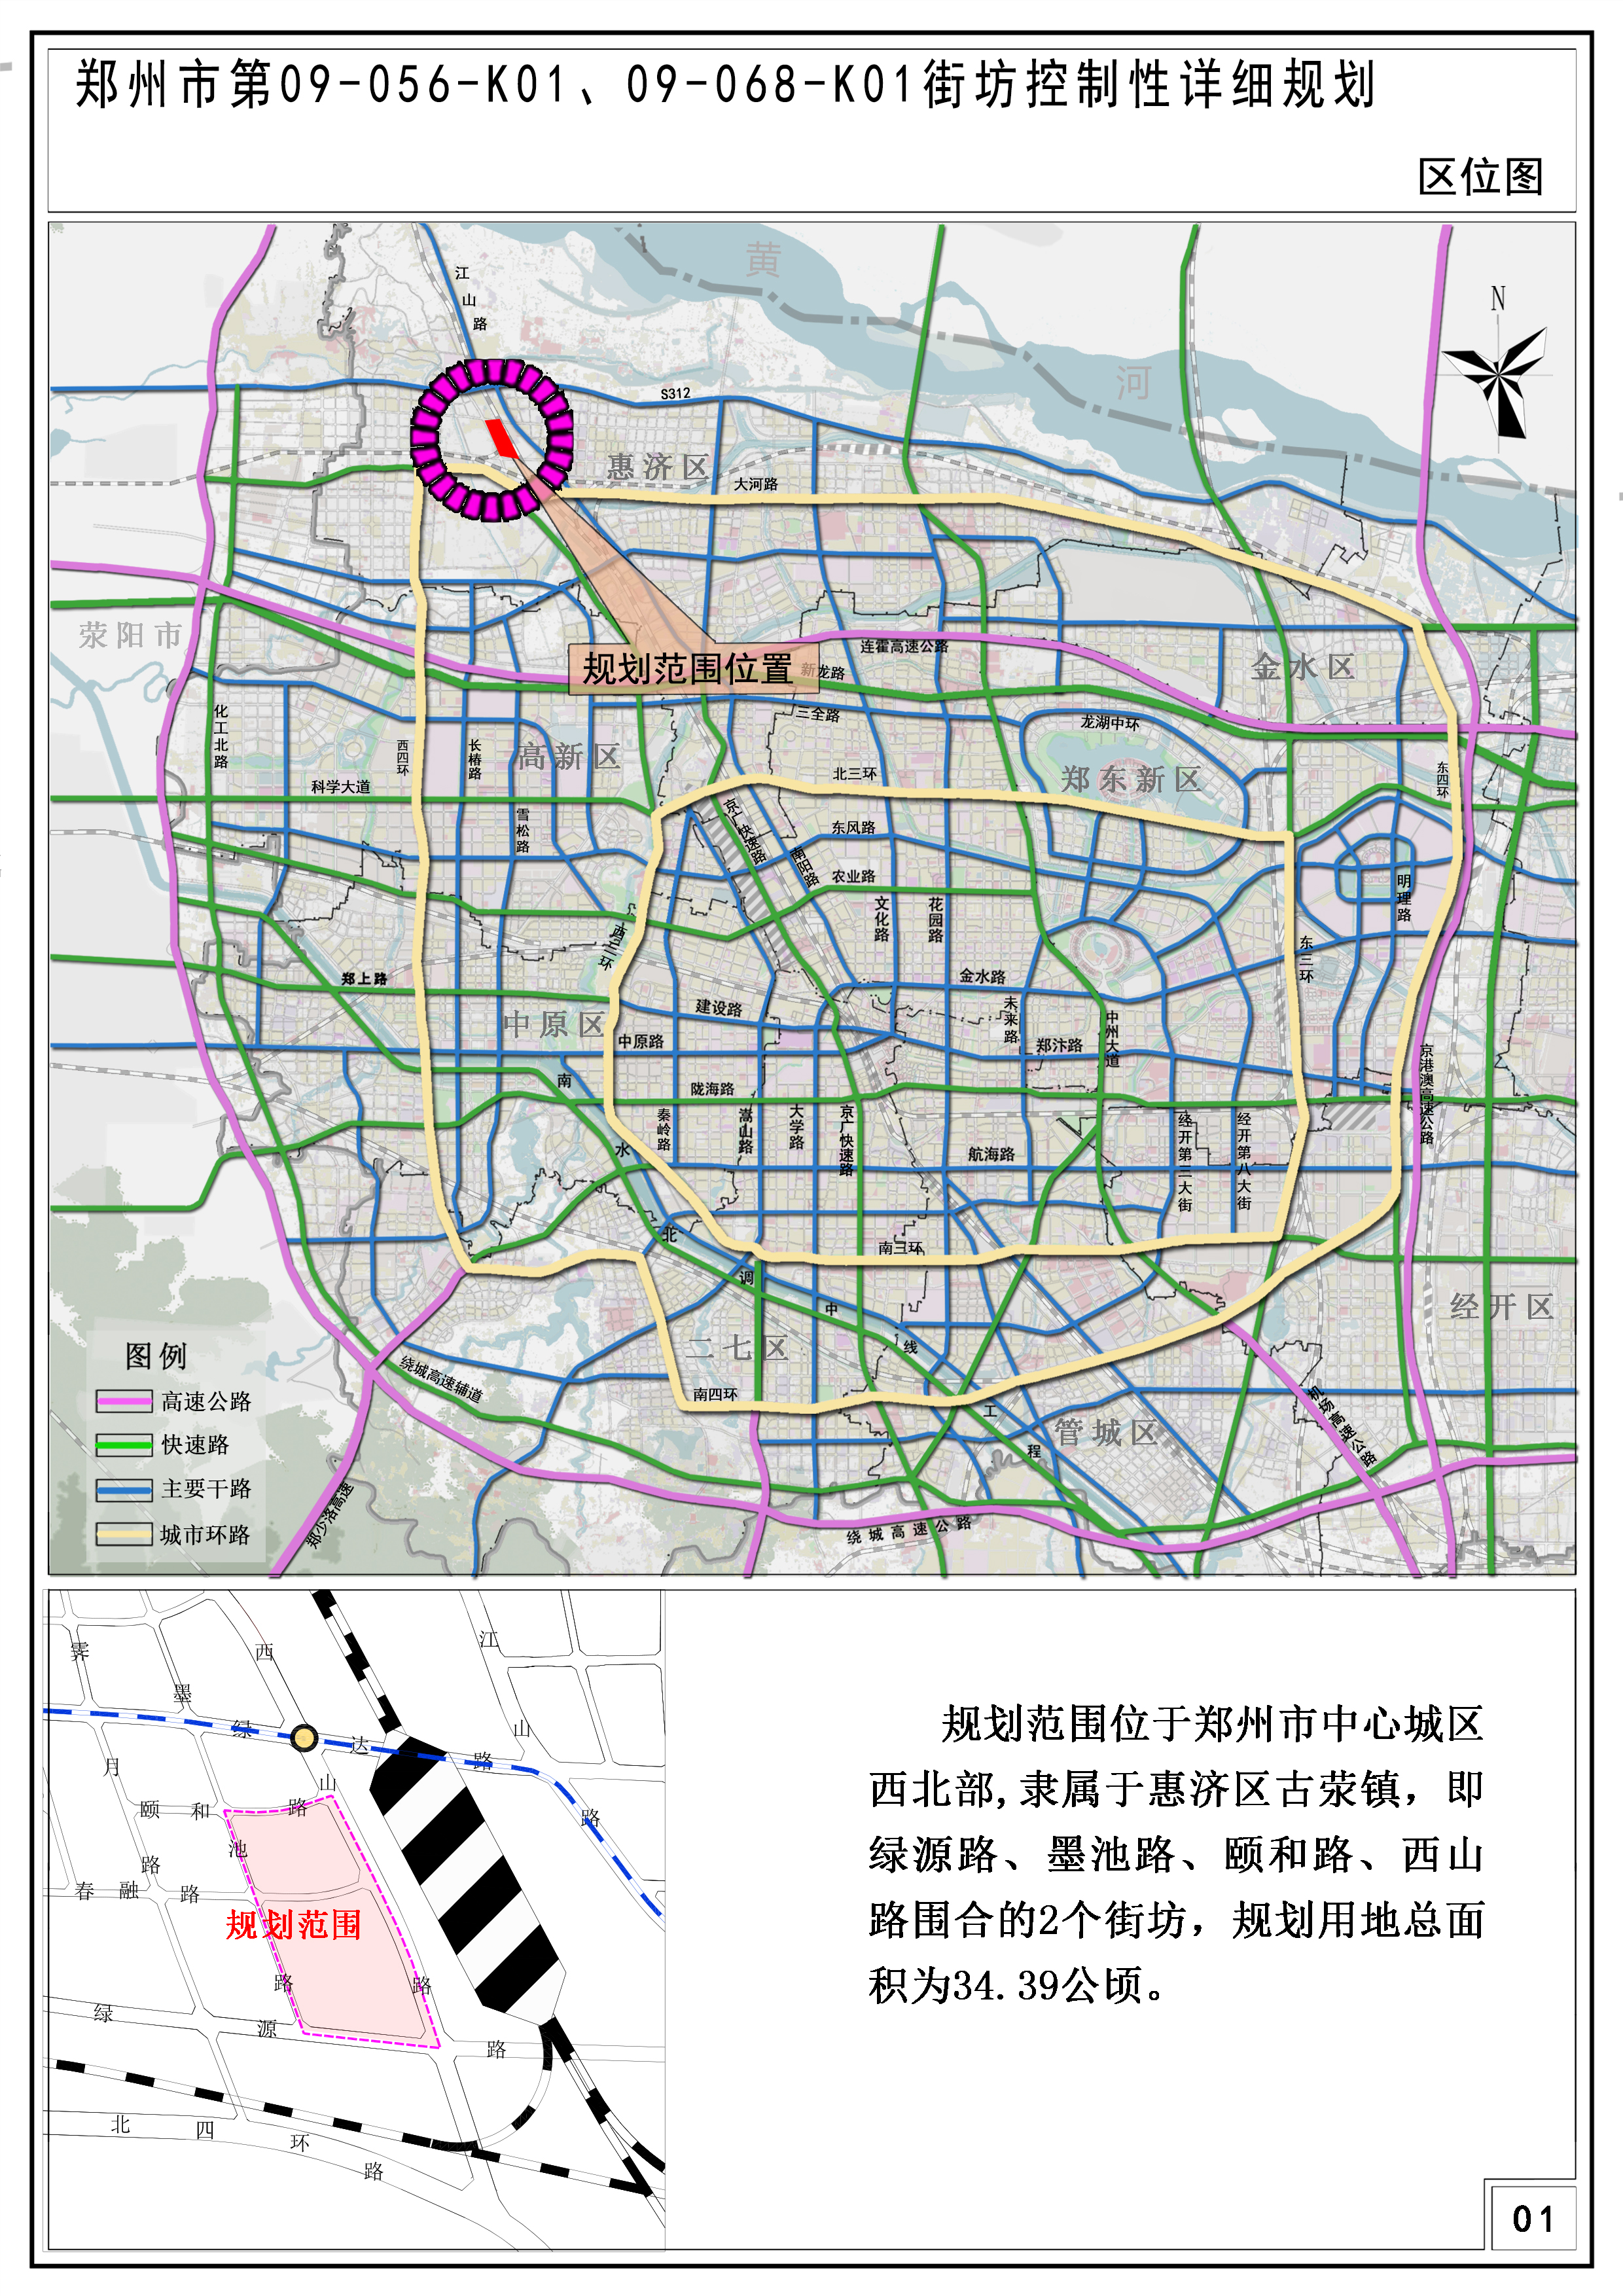 郑州市第09-056-K01、09-068-K01街坊 控制性详细规划